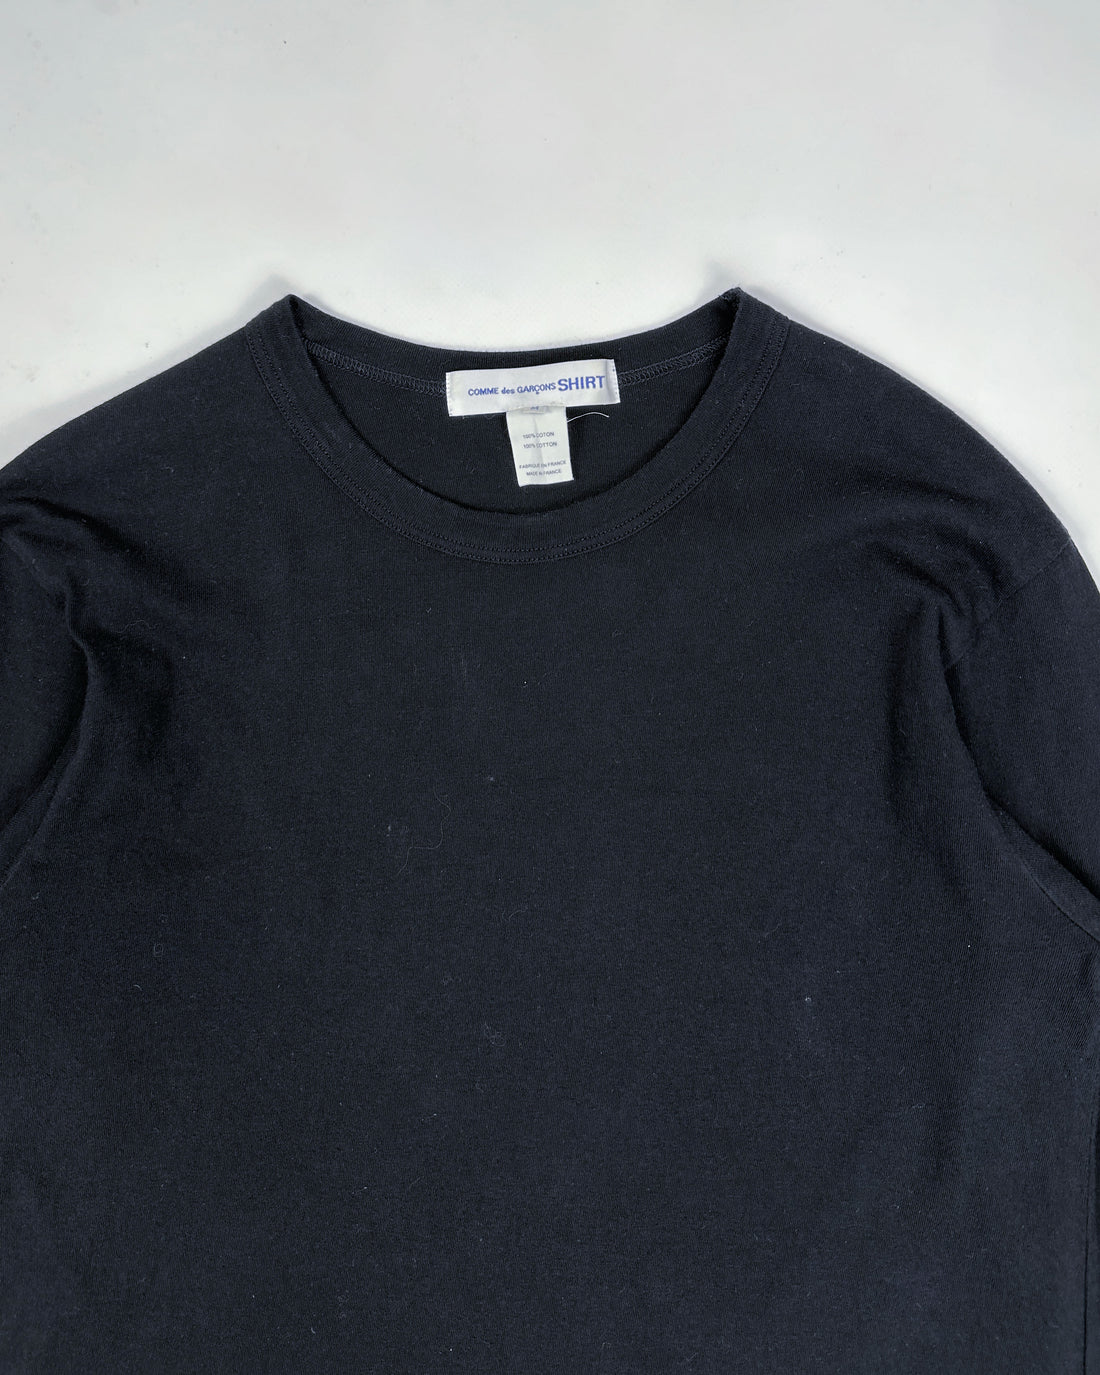 Comme Des Garçons Shirt Black Tee + Blue Shirt 2013